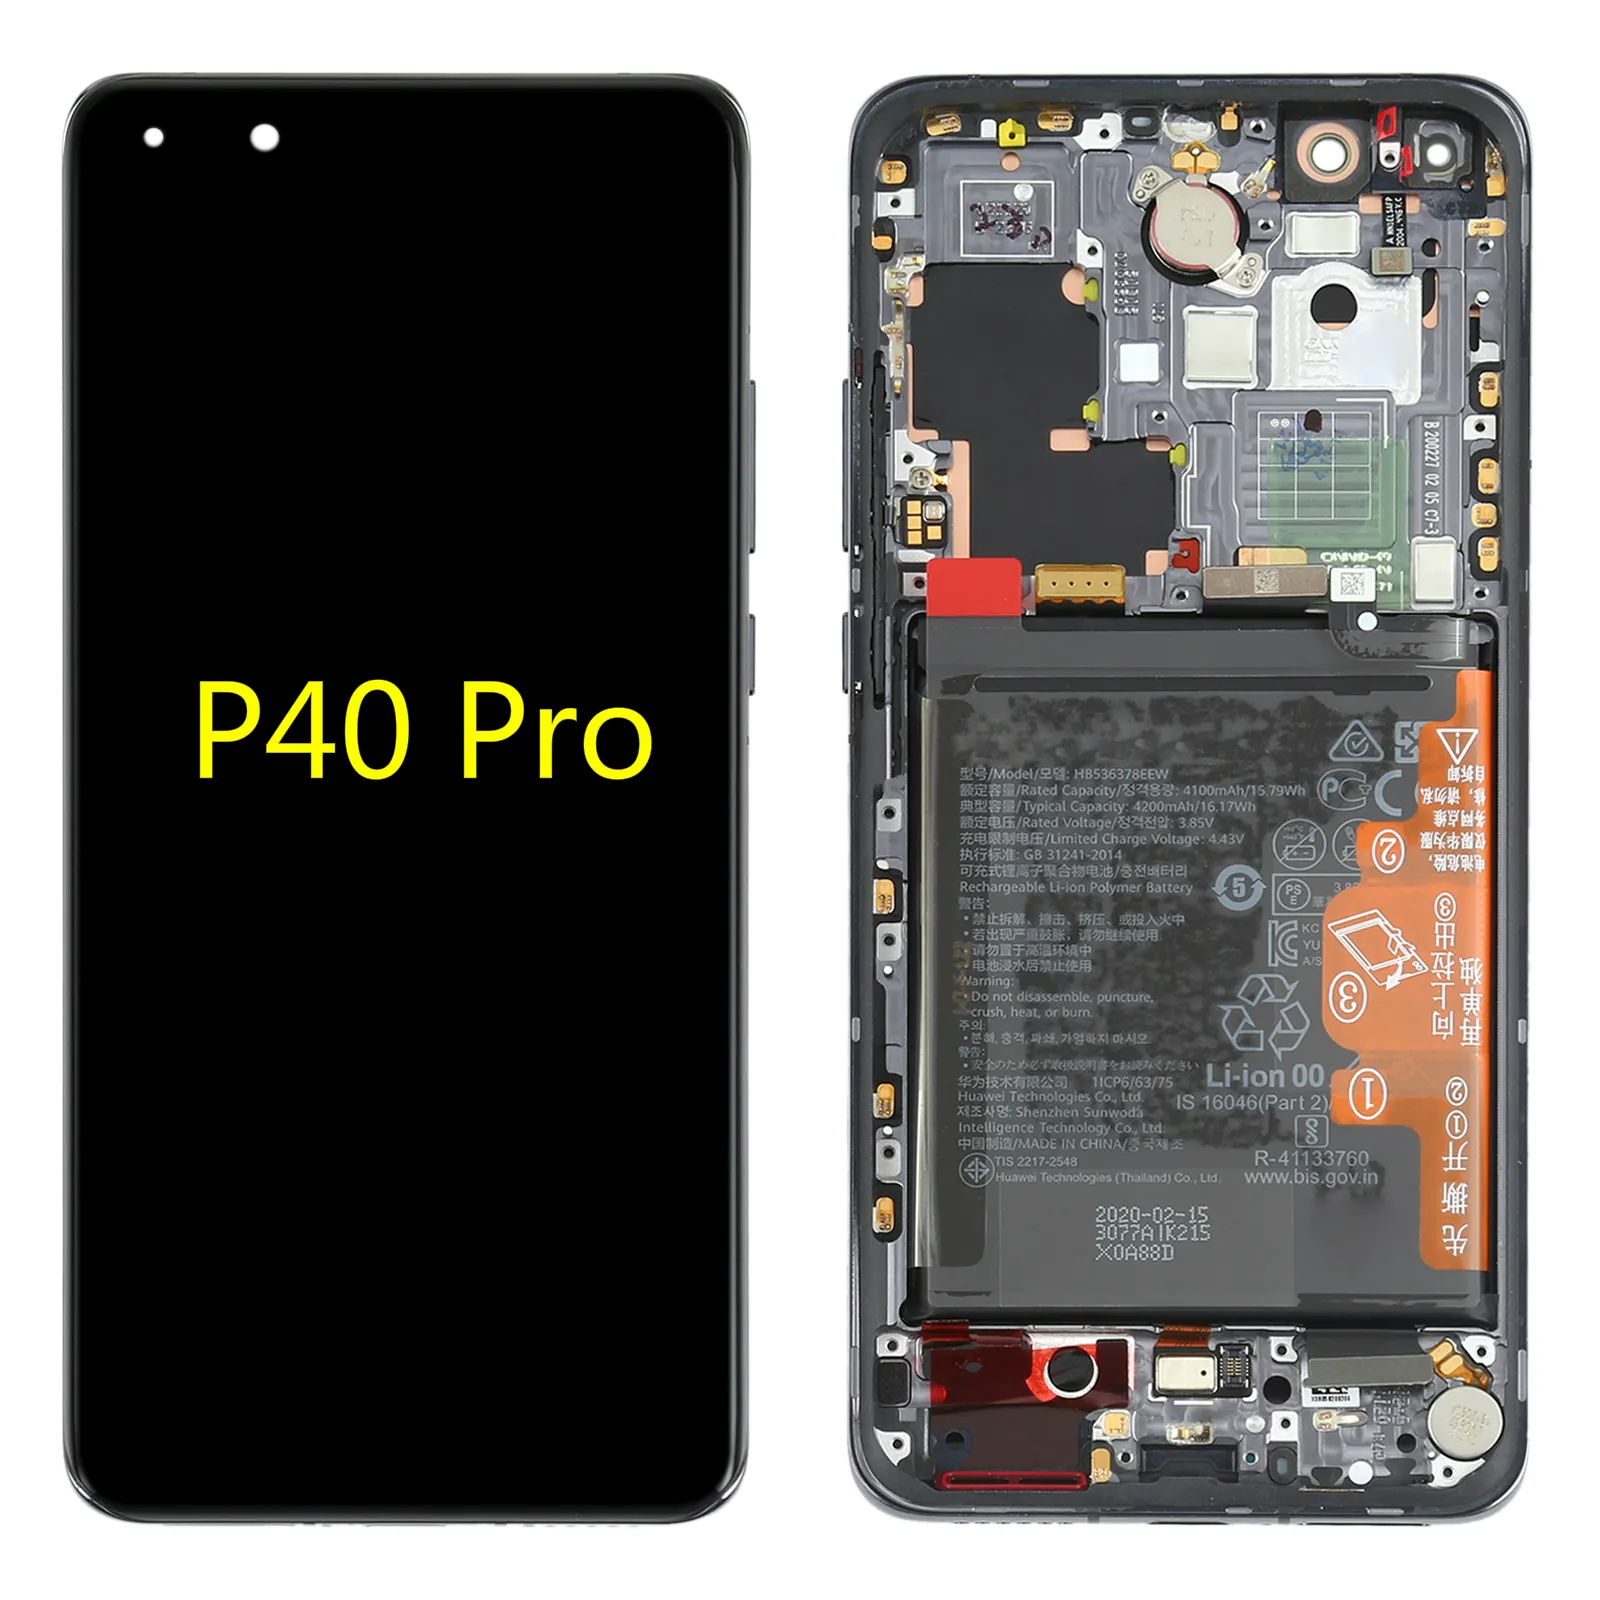 Оригинальный ЖК-дисплей черного цвета стеклянный сенсорный экран Рамка для мобильного телефона Huawei P40 Pro ЖК-дисплей экран дигитайзер